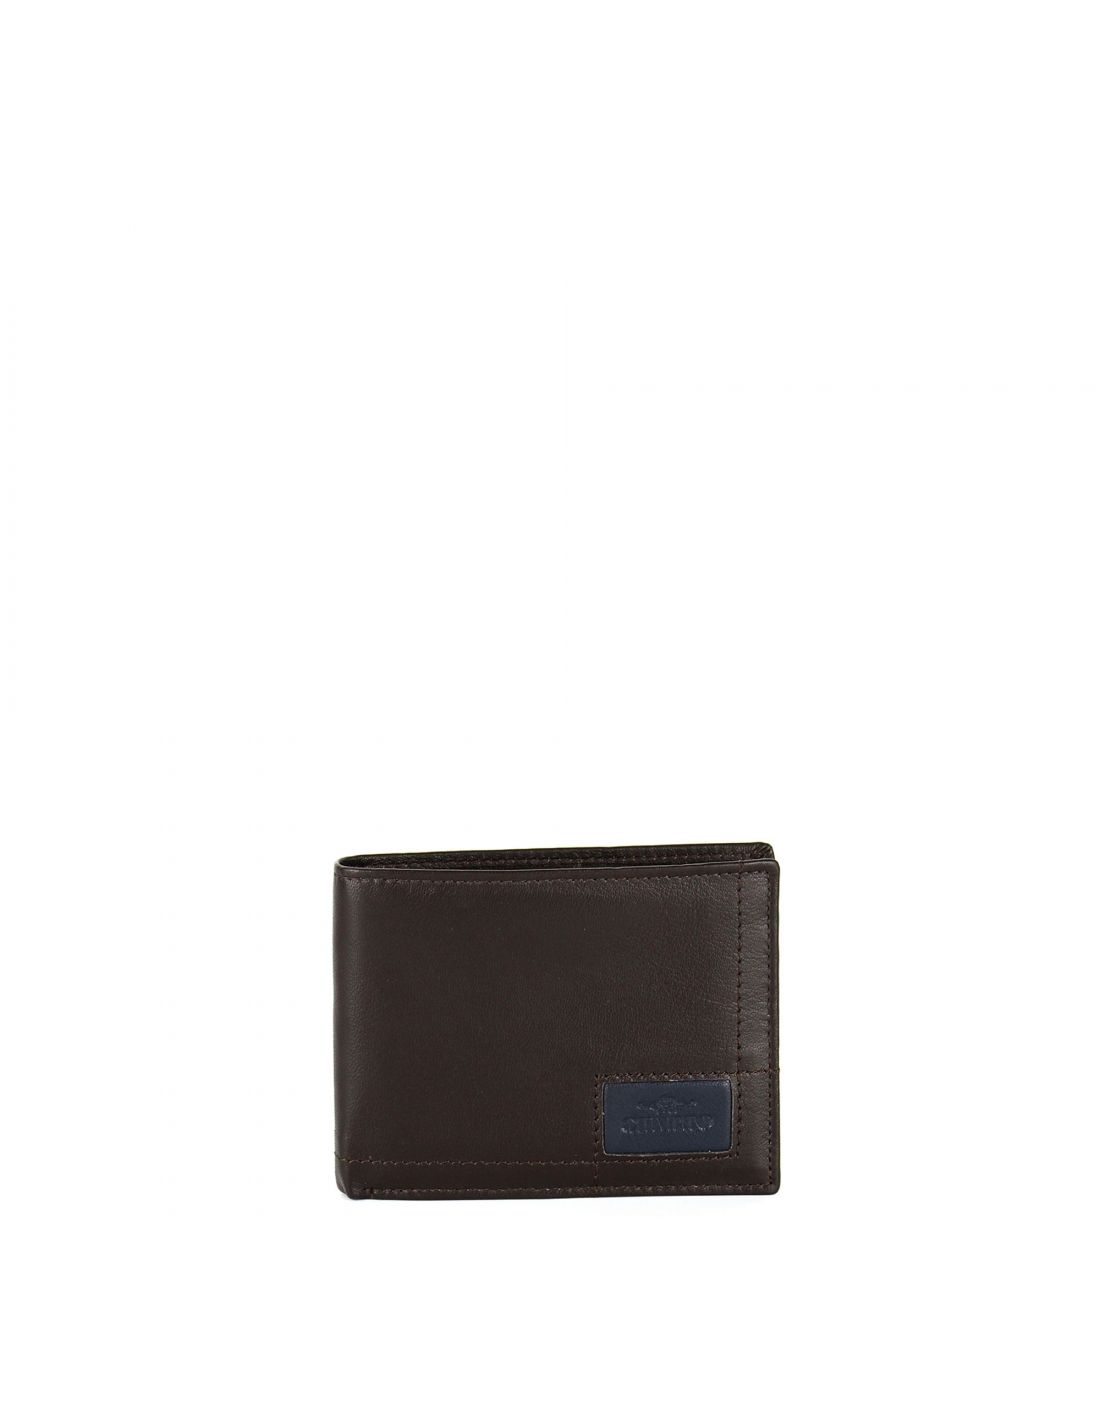 Charro Men wallet in genuine leather